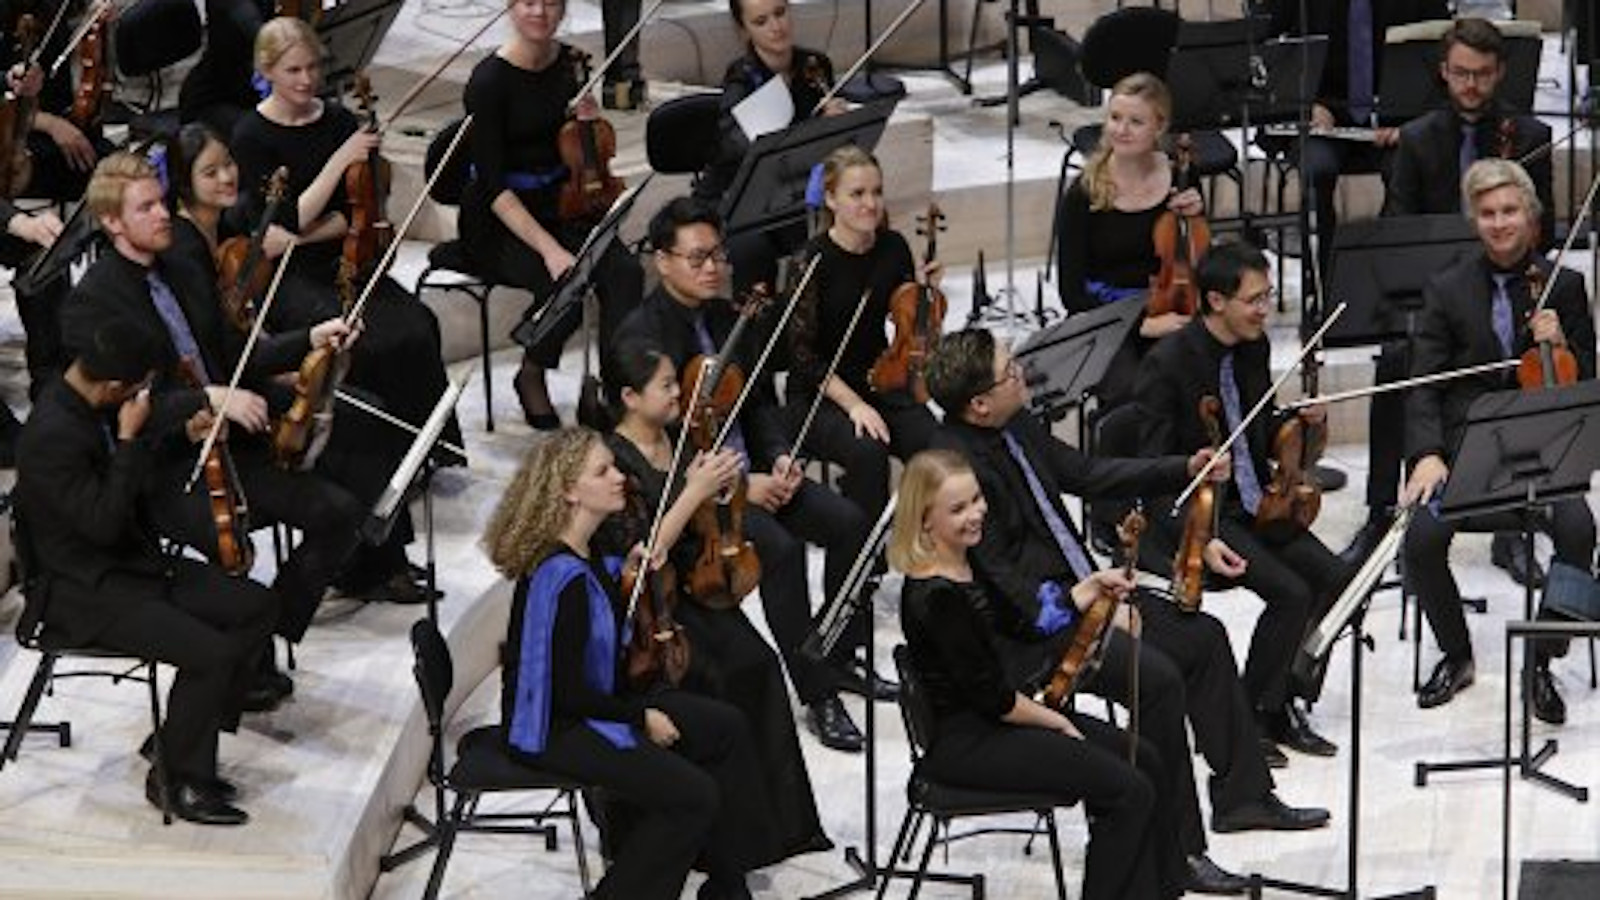 Kuvassa on Sibelius Akatemian orkesteri.  Orkesteri on esiintymässä Musiikkitalossa.